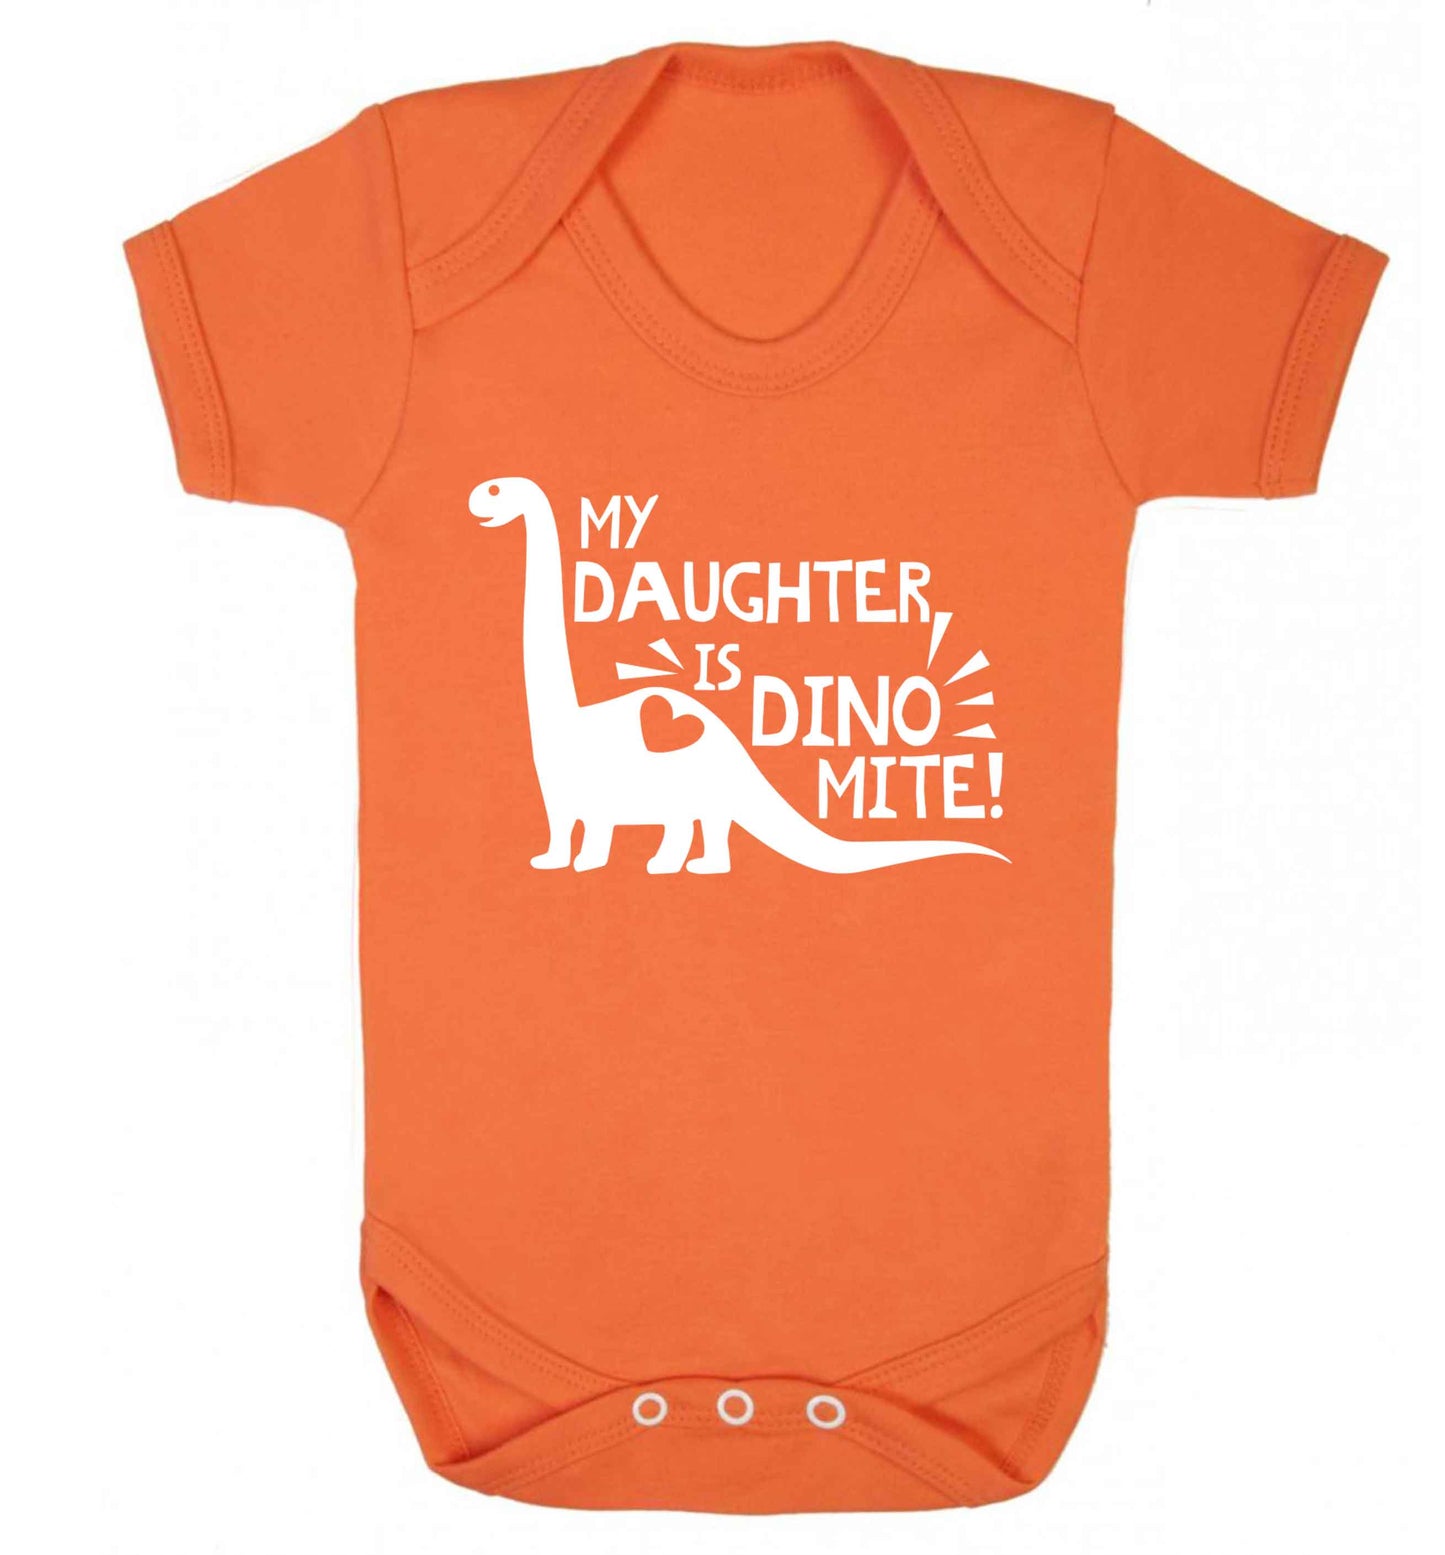 My daughter is dinomite! Baby Vest orange 18-24 months